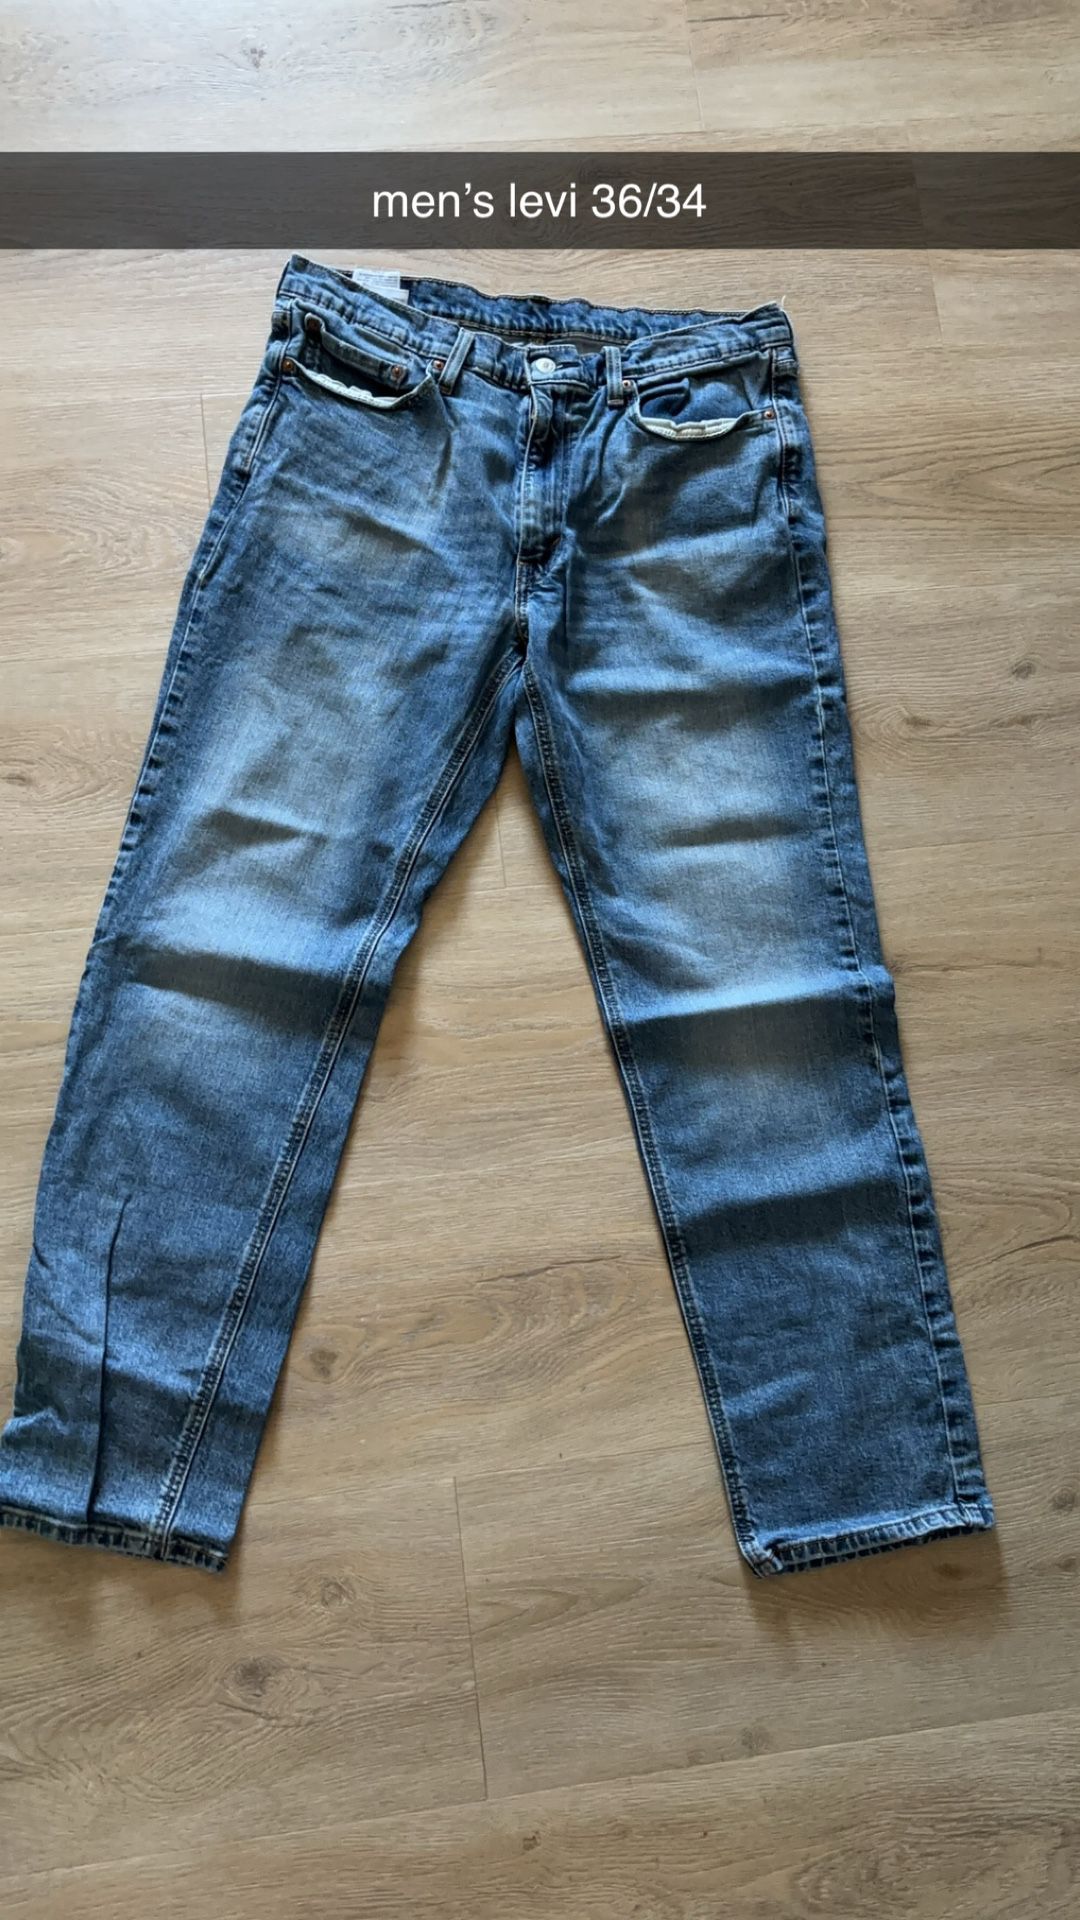 men’s levi jeans